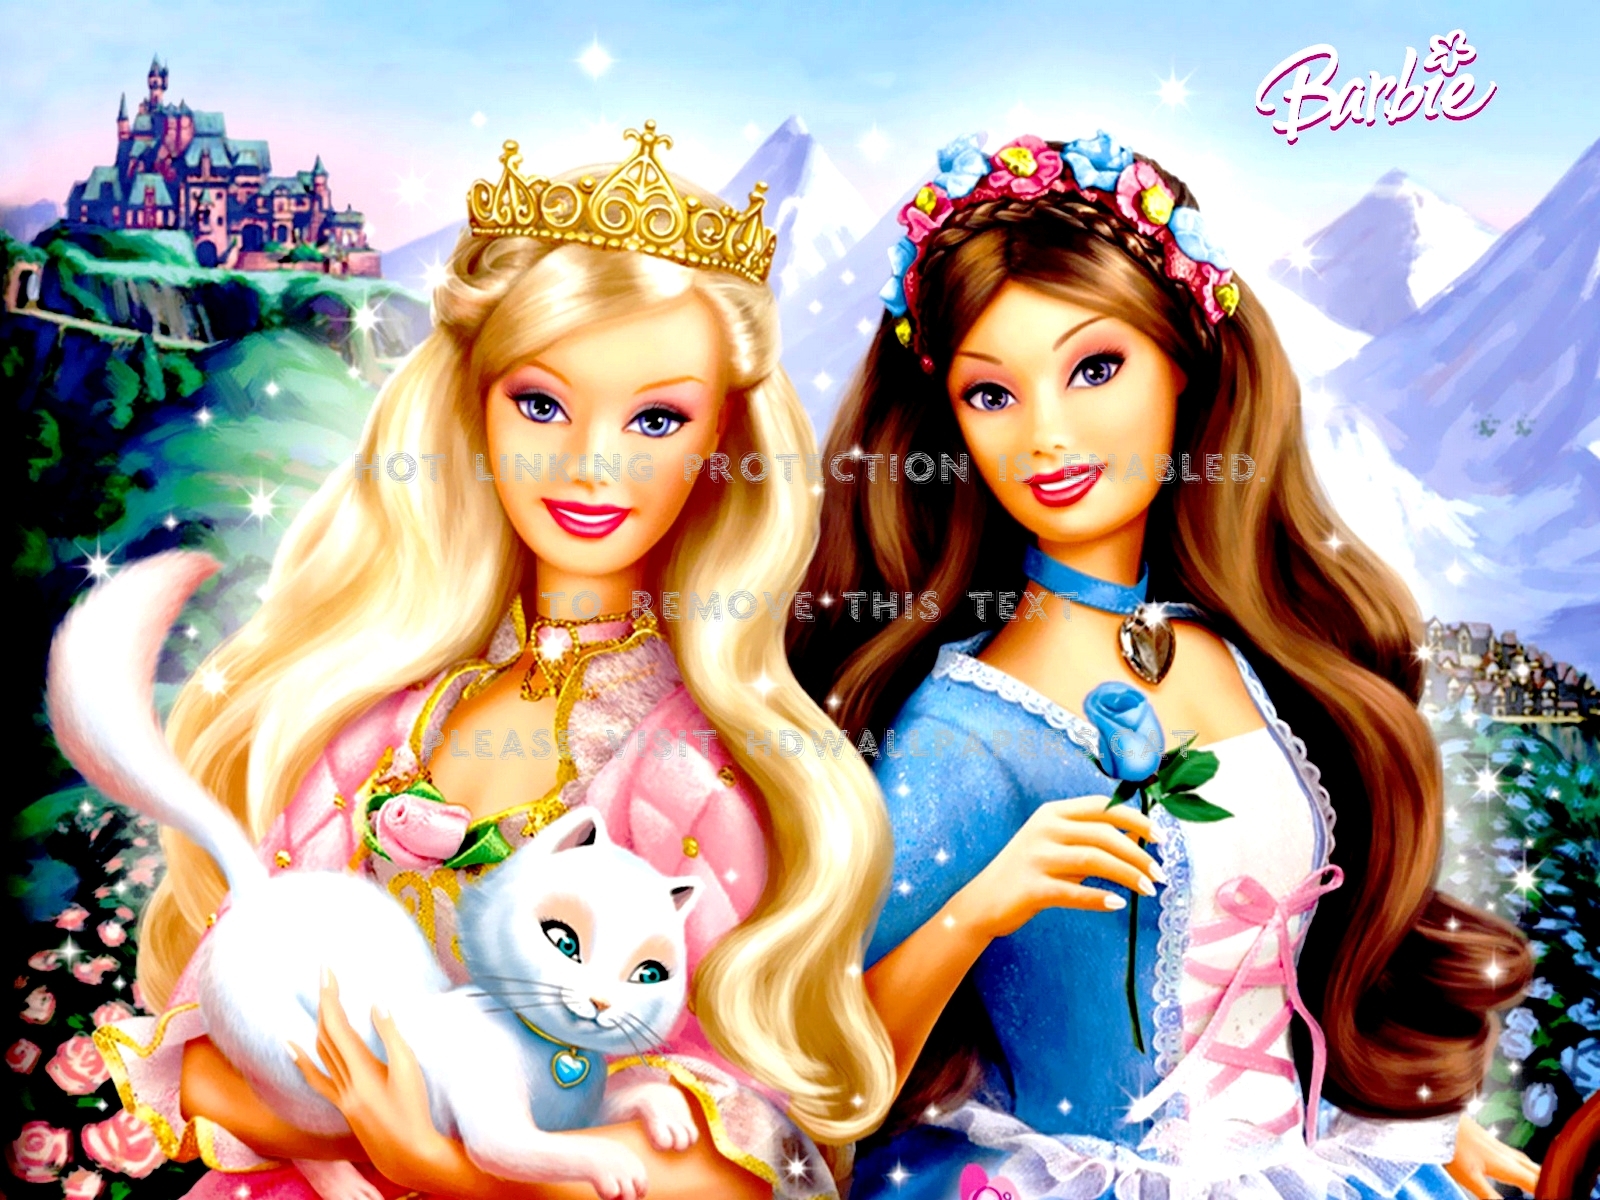 Wallpaper Dasktop Gambar Barbie 3d Image Num 4